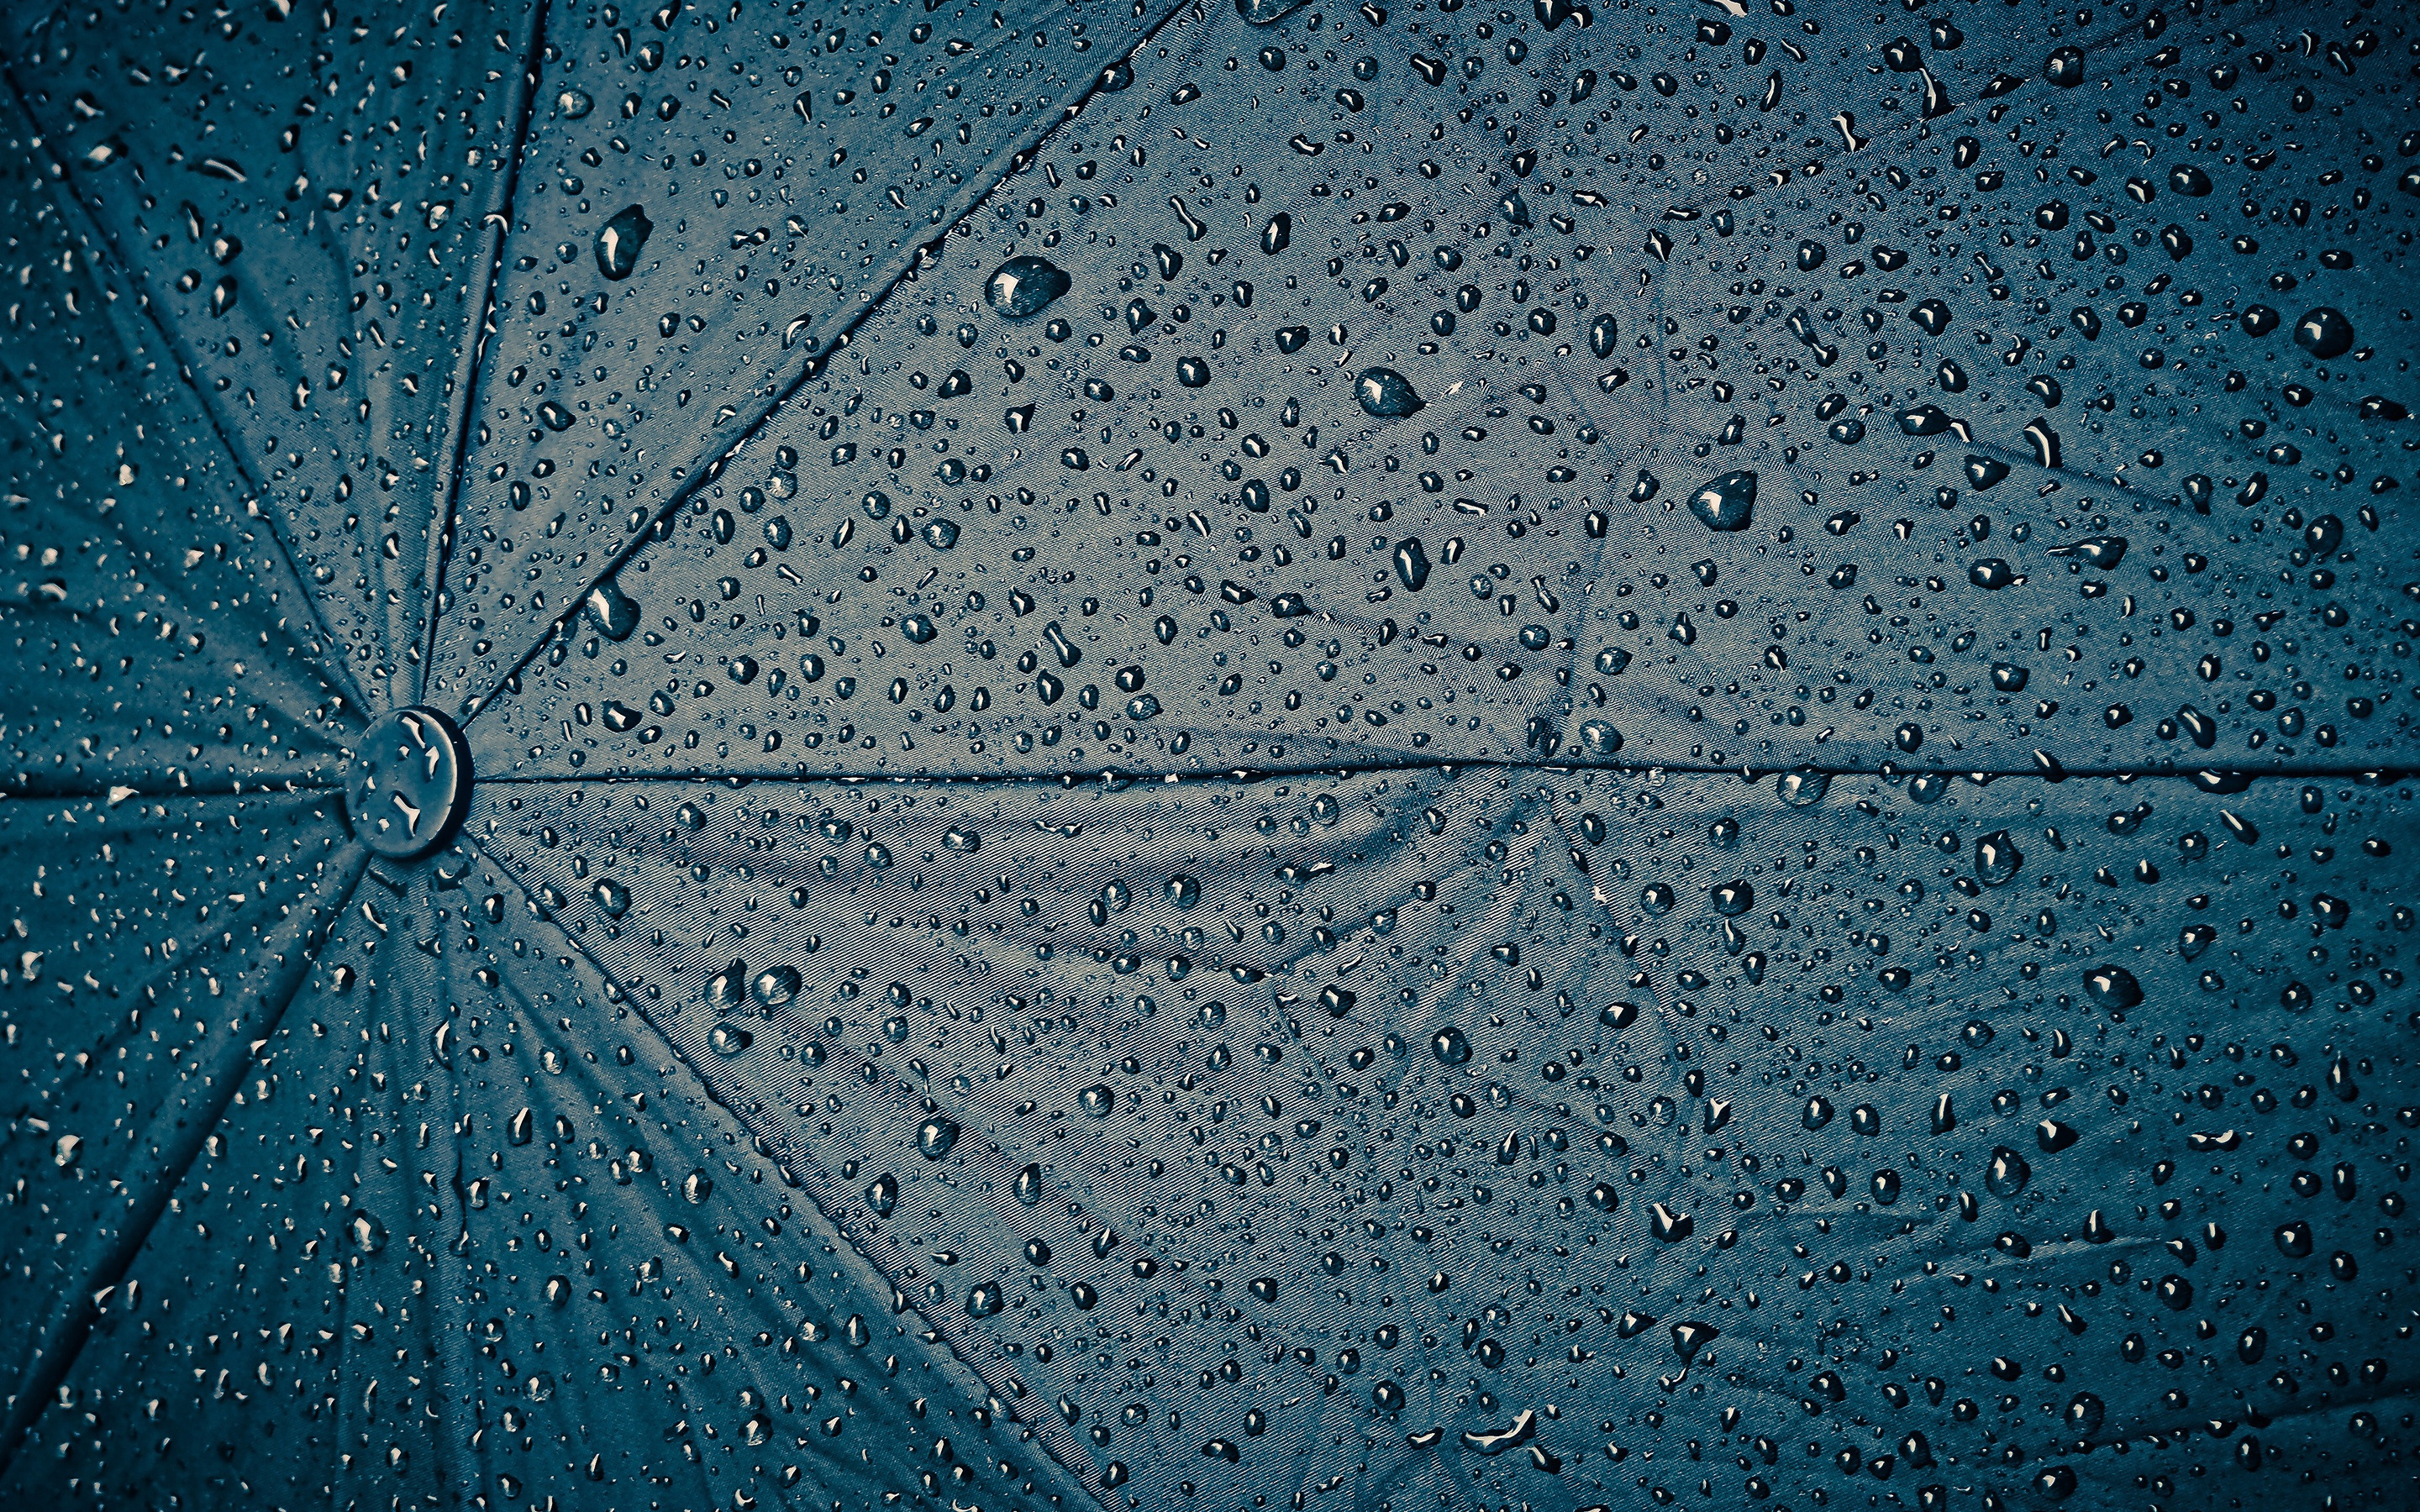 Umbrella texture 